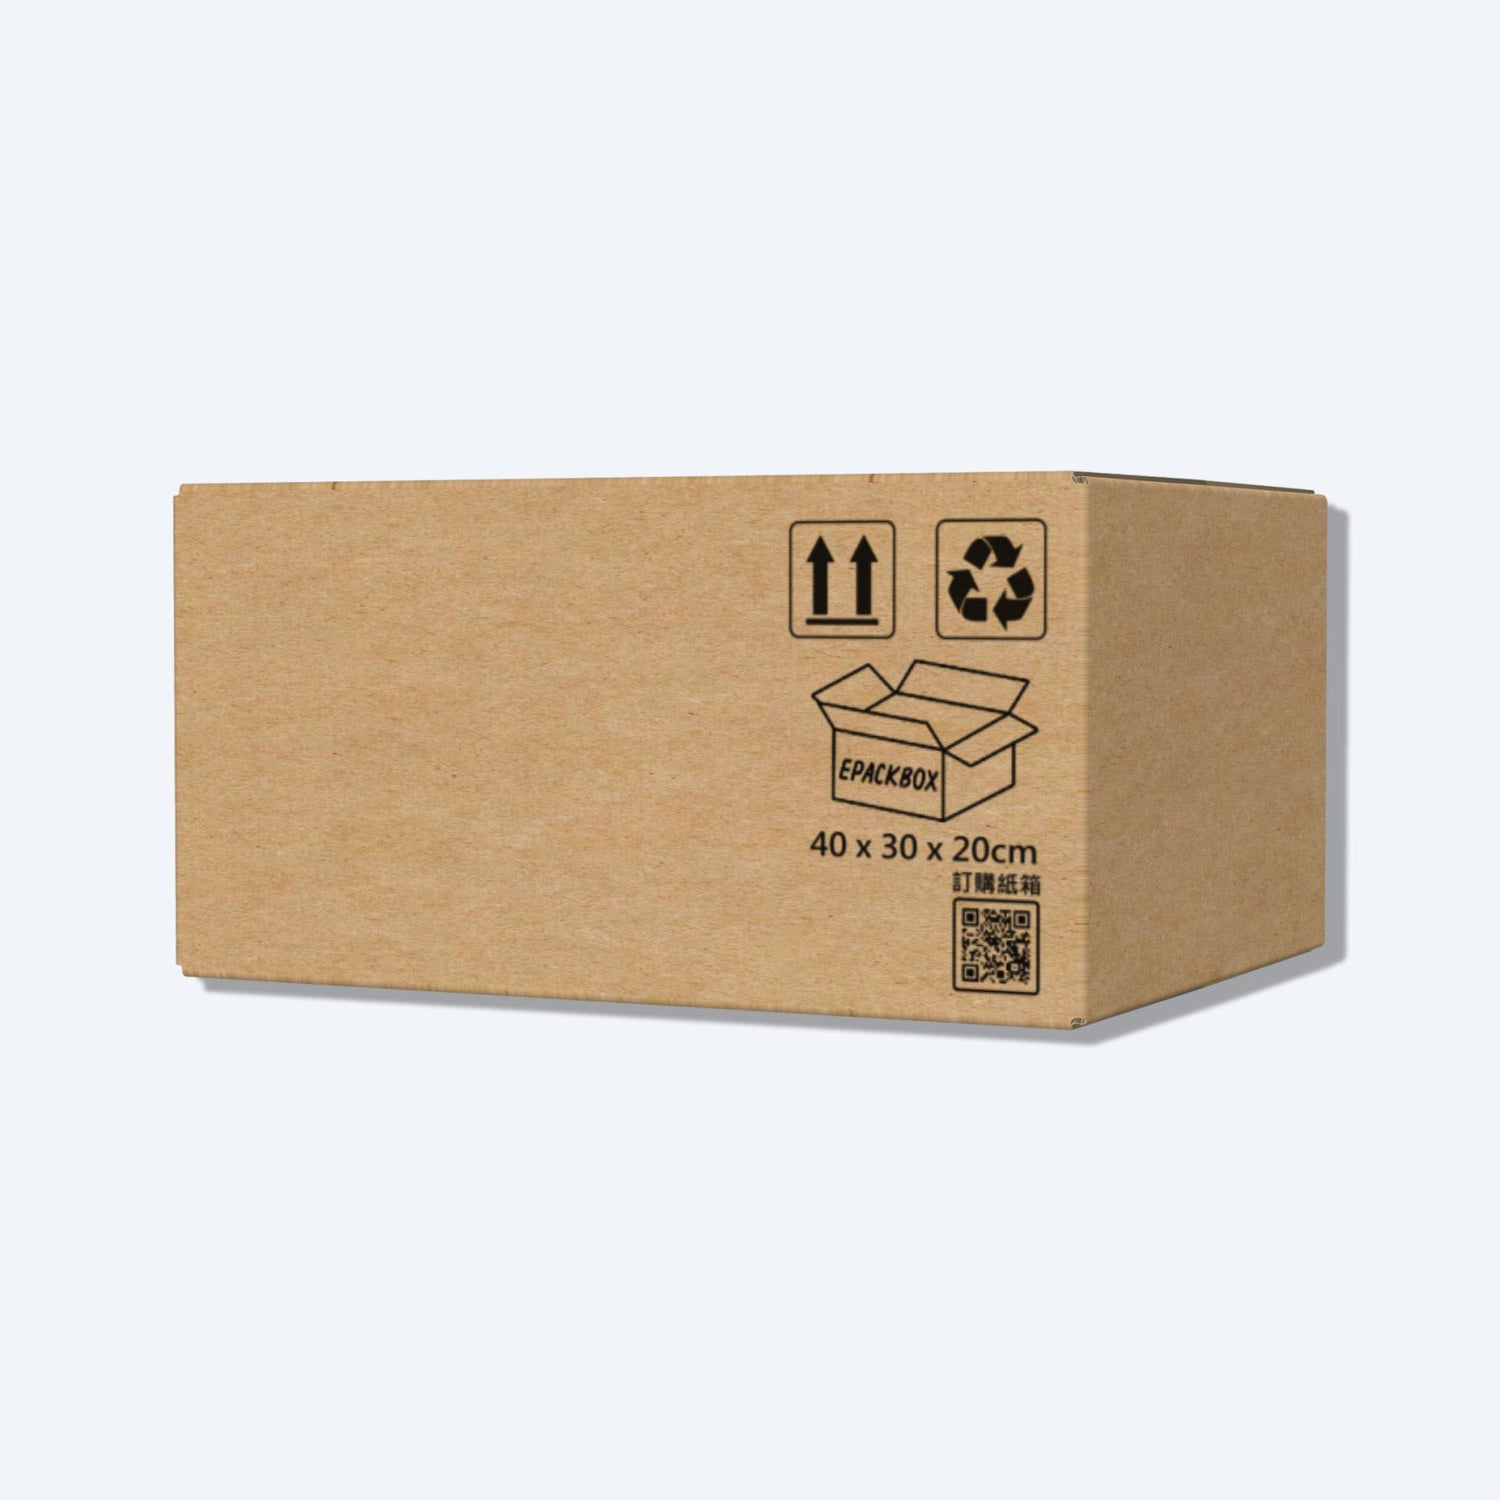 順豐F4尺寸紙箱展開圖，其尺寸符合順豐速運的包裝標準，展示折疊和組裝方式。